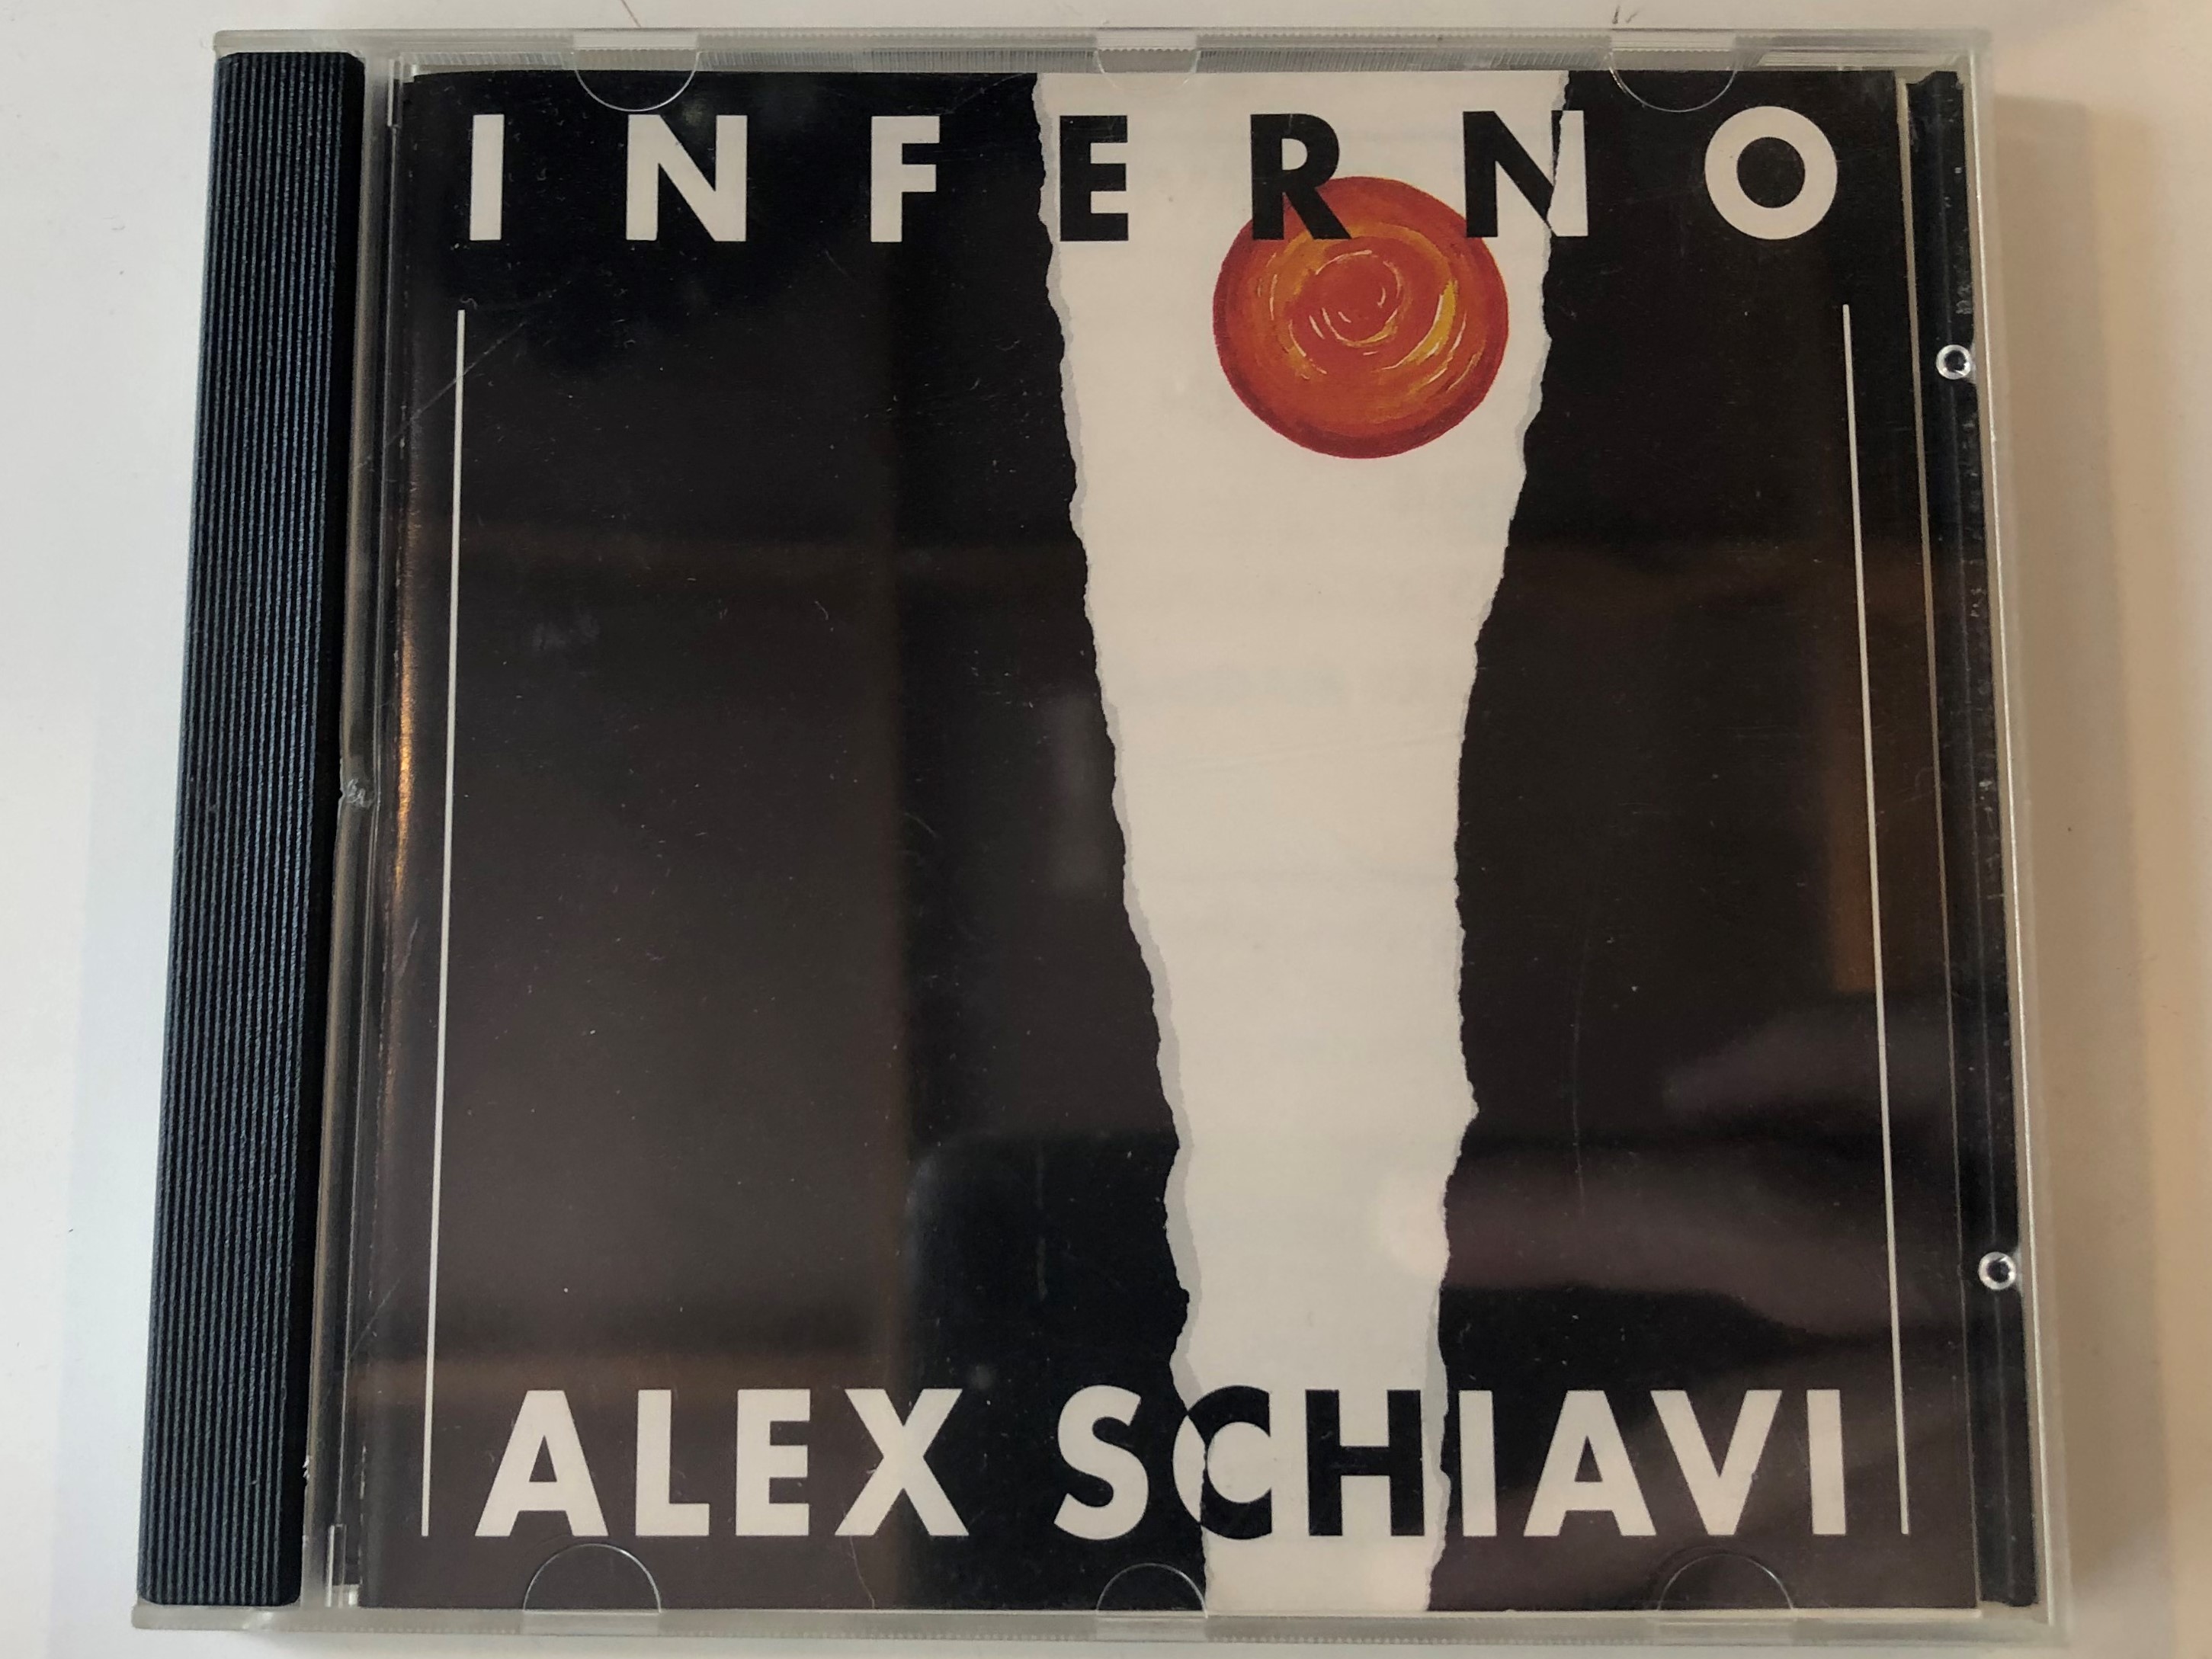 inferno-alex-schiavi-kr-m-audio-cd-1991-stereo-hcd-37495-1-.jpg